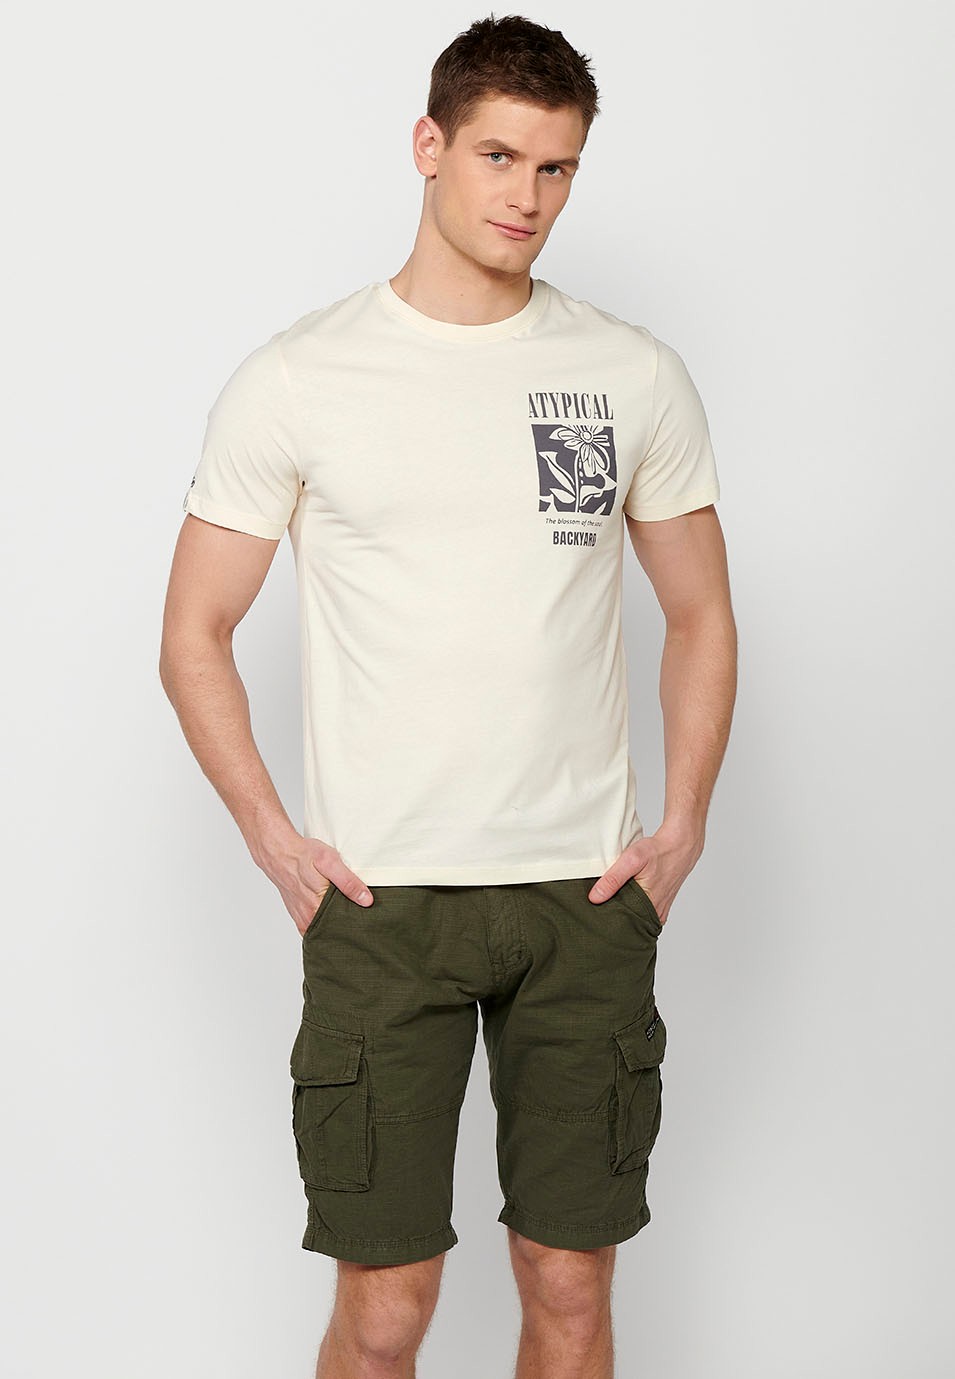 Camiseta de manga corta de algodo, cuello redondo y estampado trasero color crema para hombre